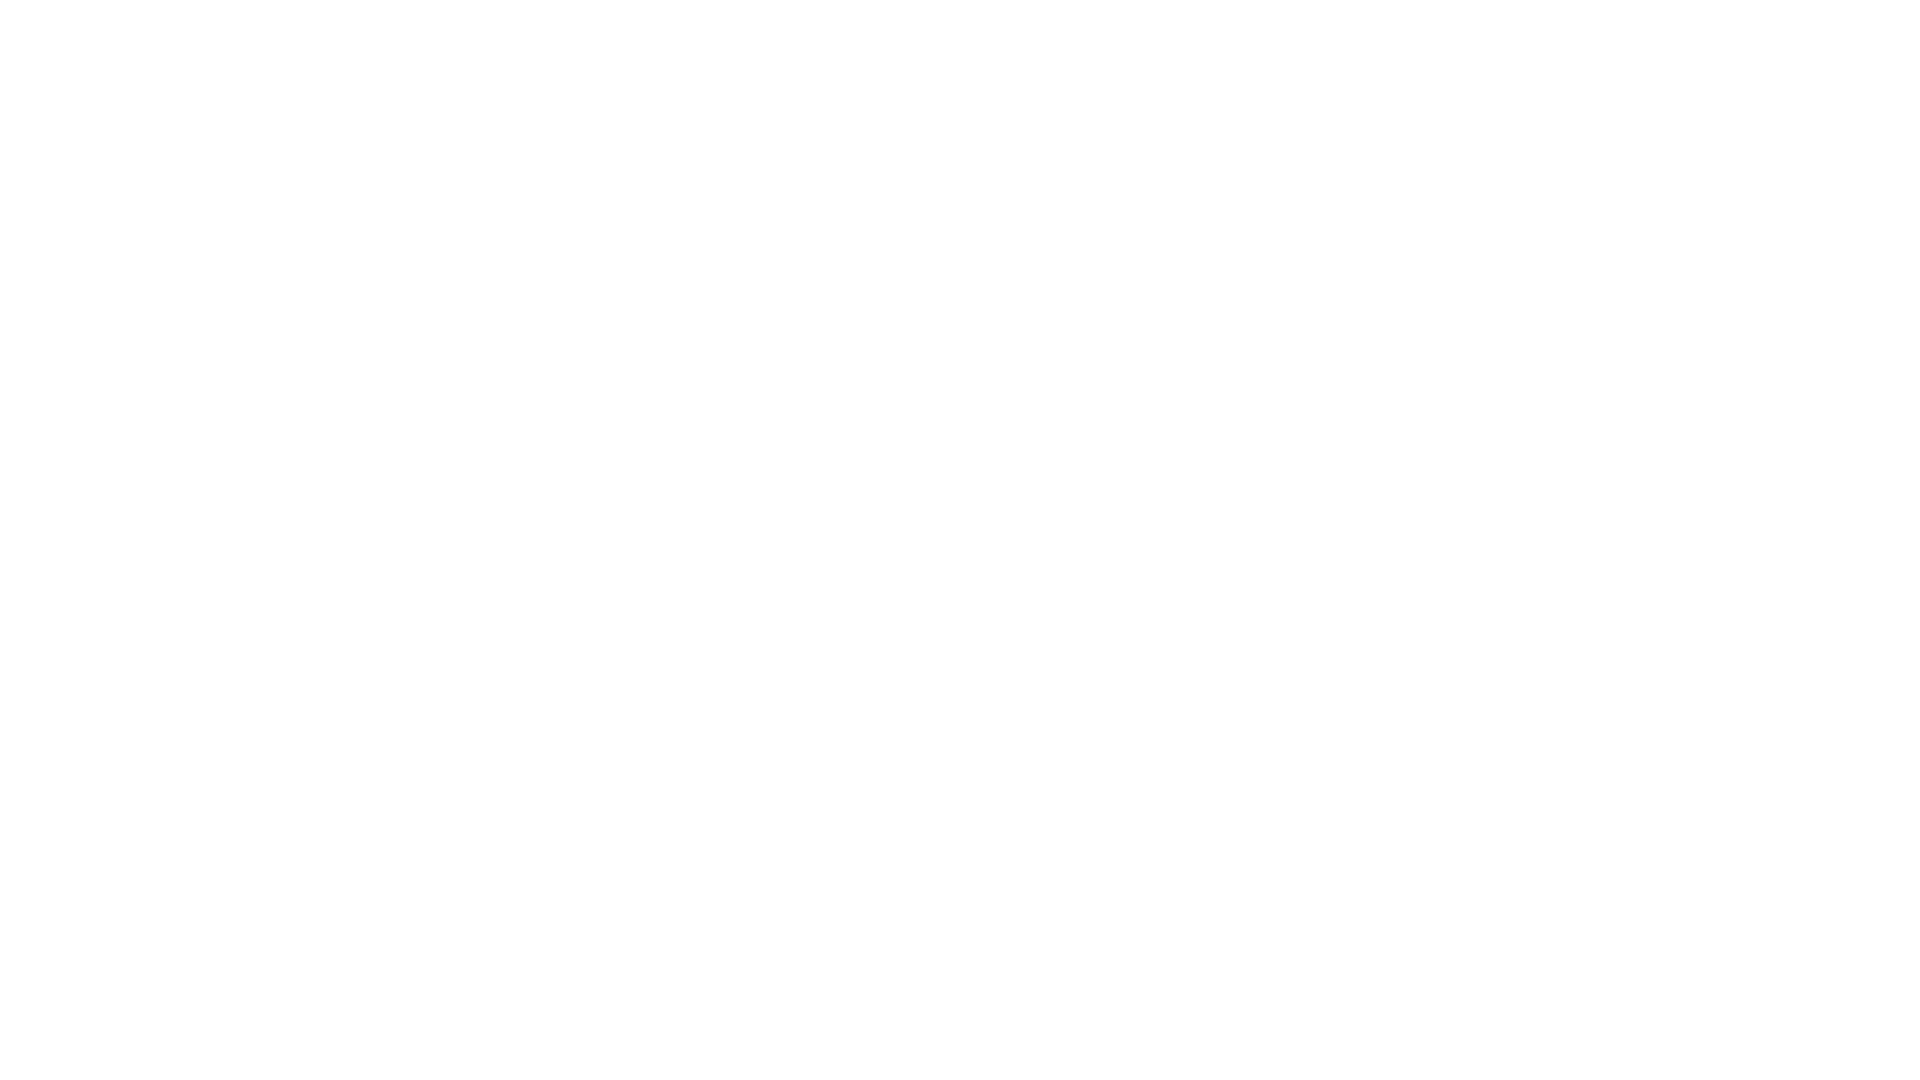 Plan de recuperacion transformacion y resiliencia. Gobierno de Espaa